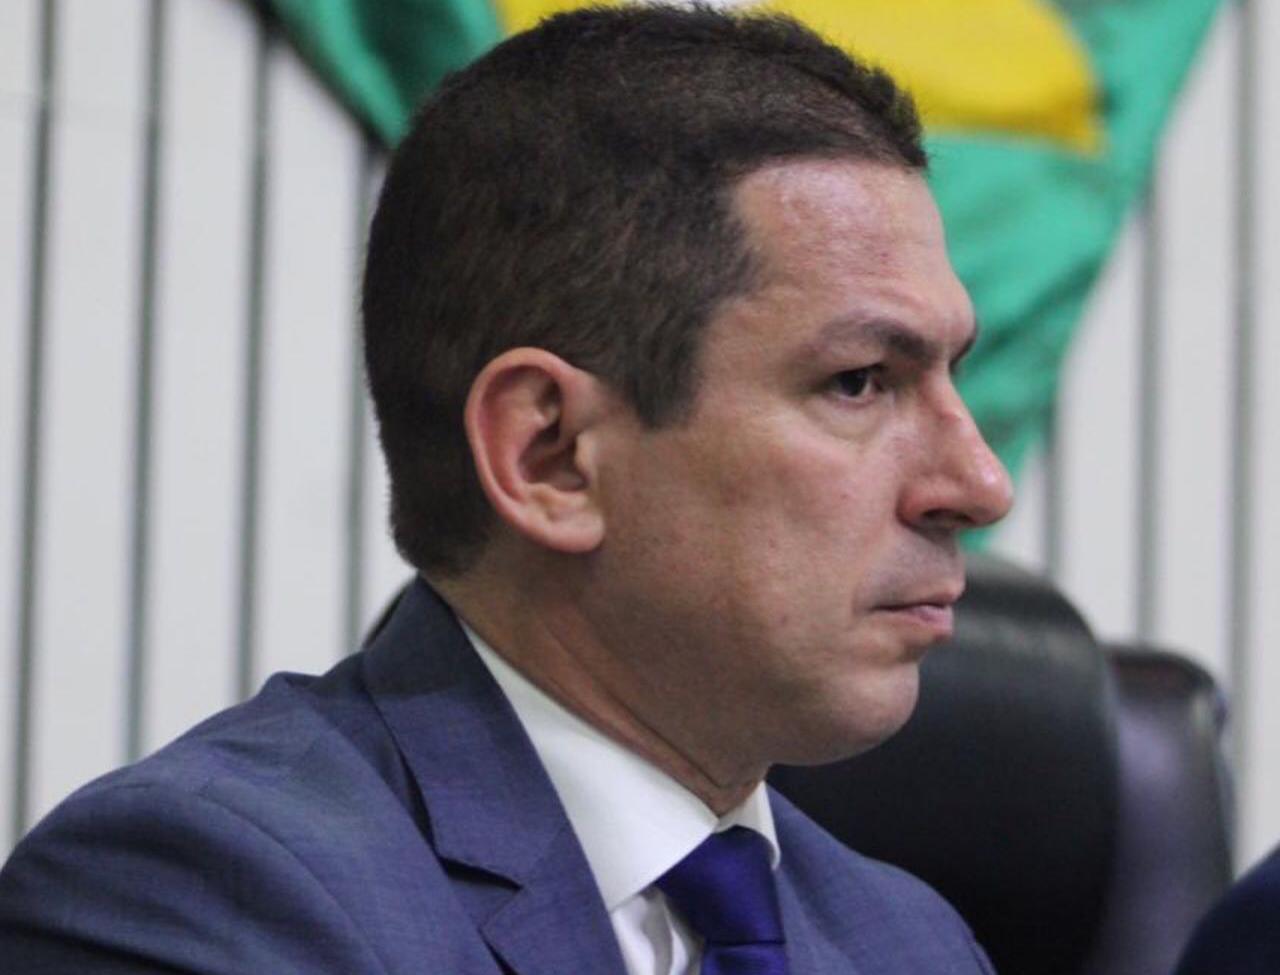 Você está visualizando atualmente “A maior debilidade da prefeitura de Manaus é o transporte público”, afirma Marcelo Ramos